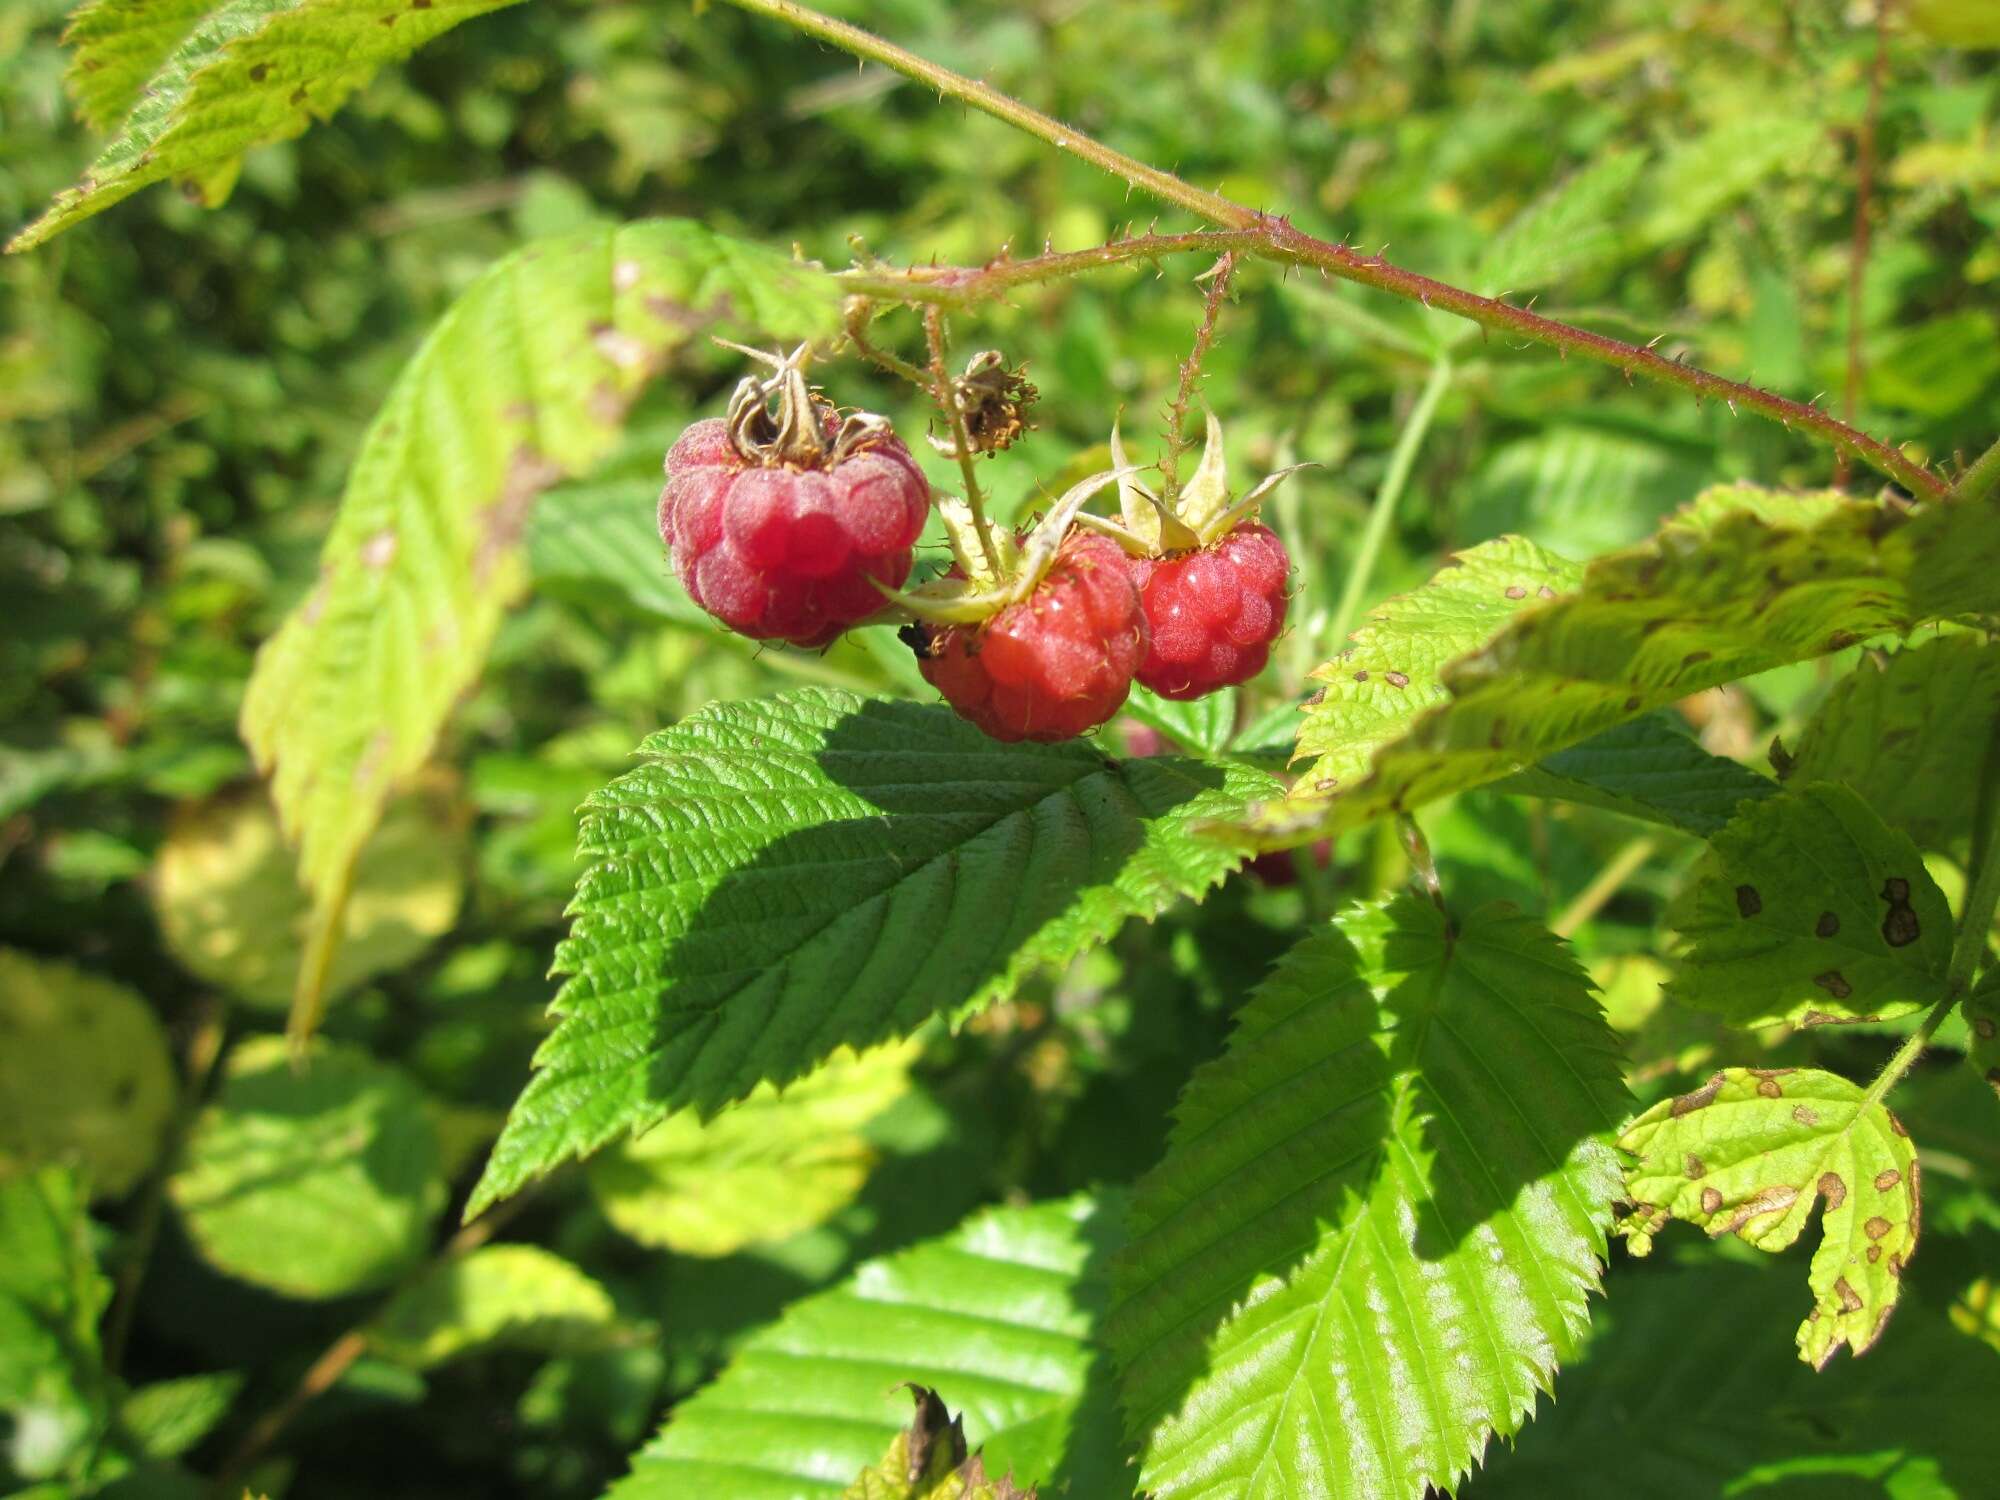 Image of Raspberry